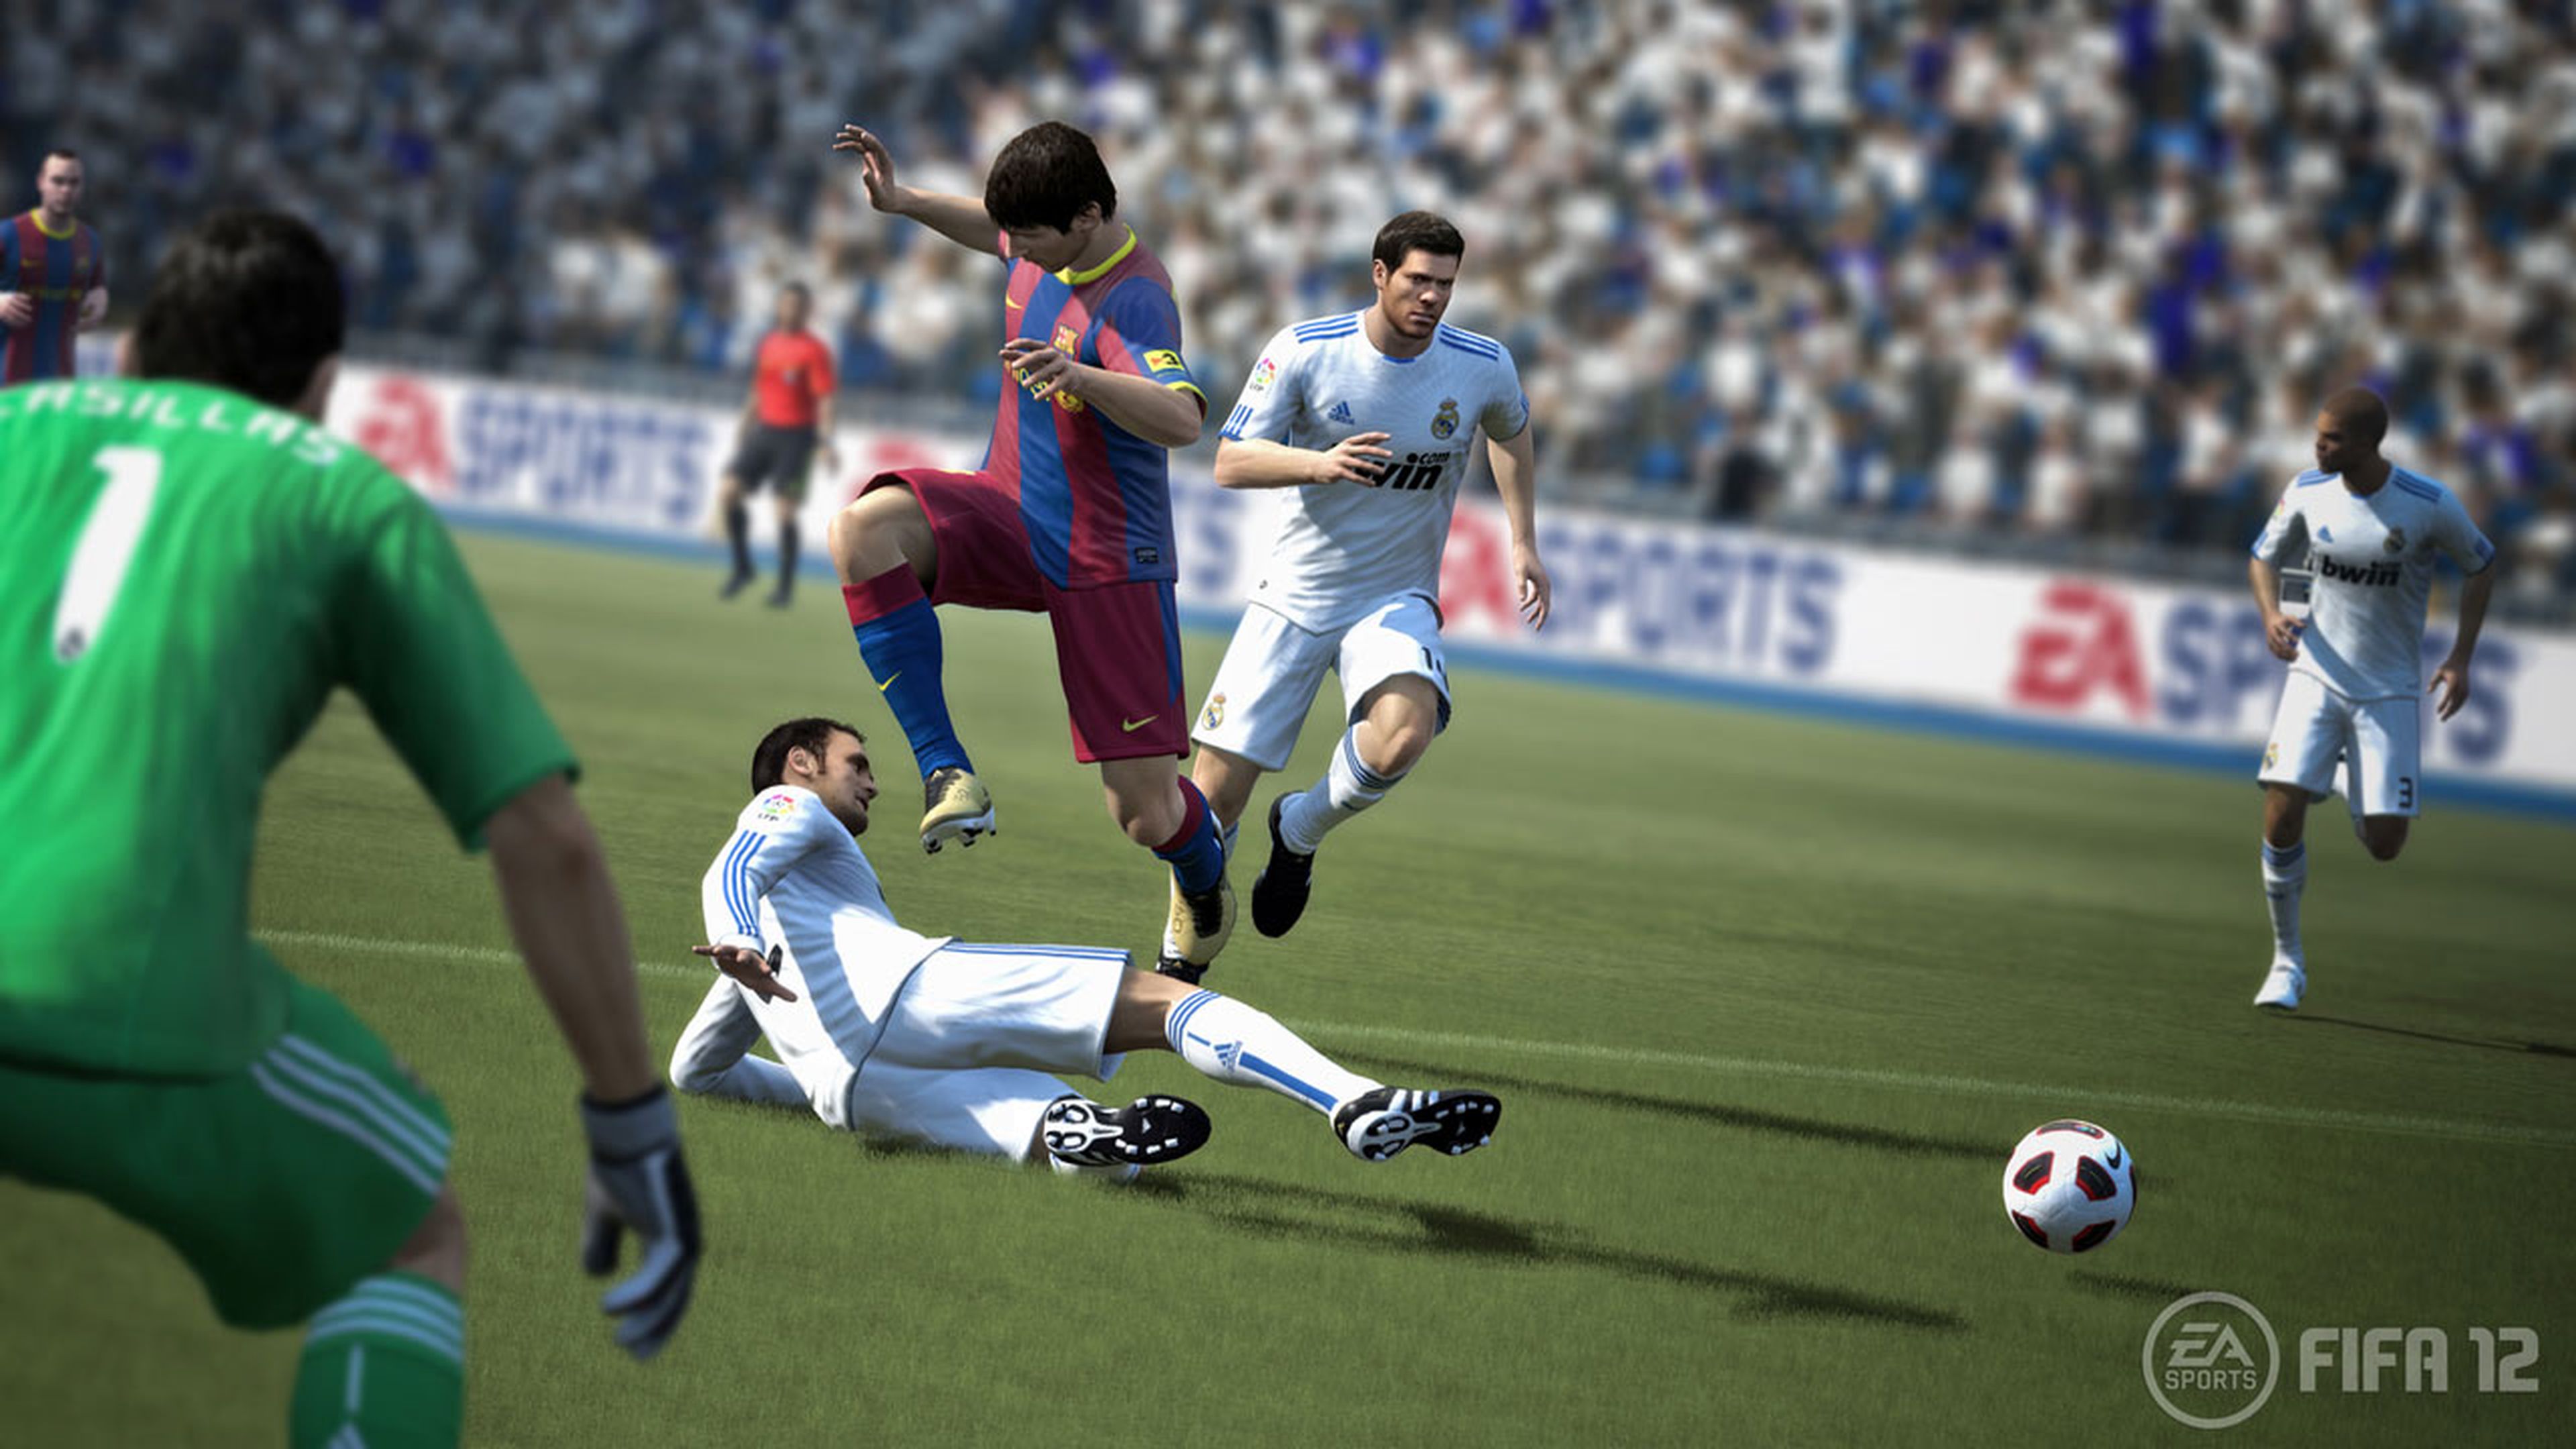 FIFA 12 promete todo lo que pedía la afición